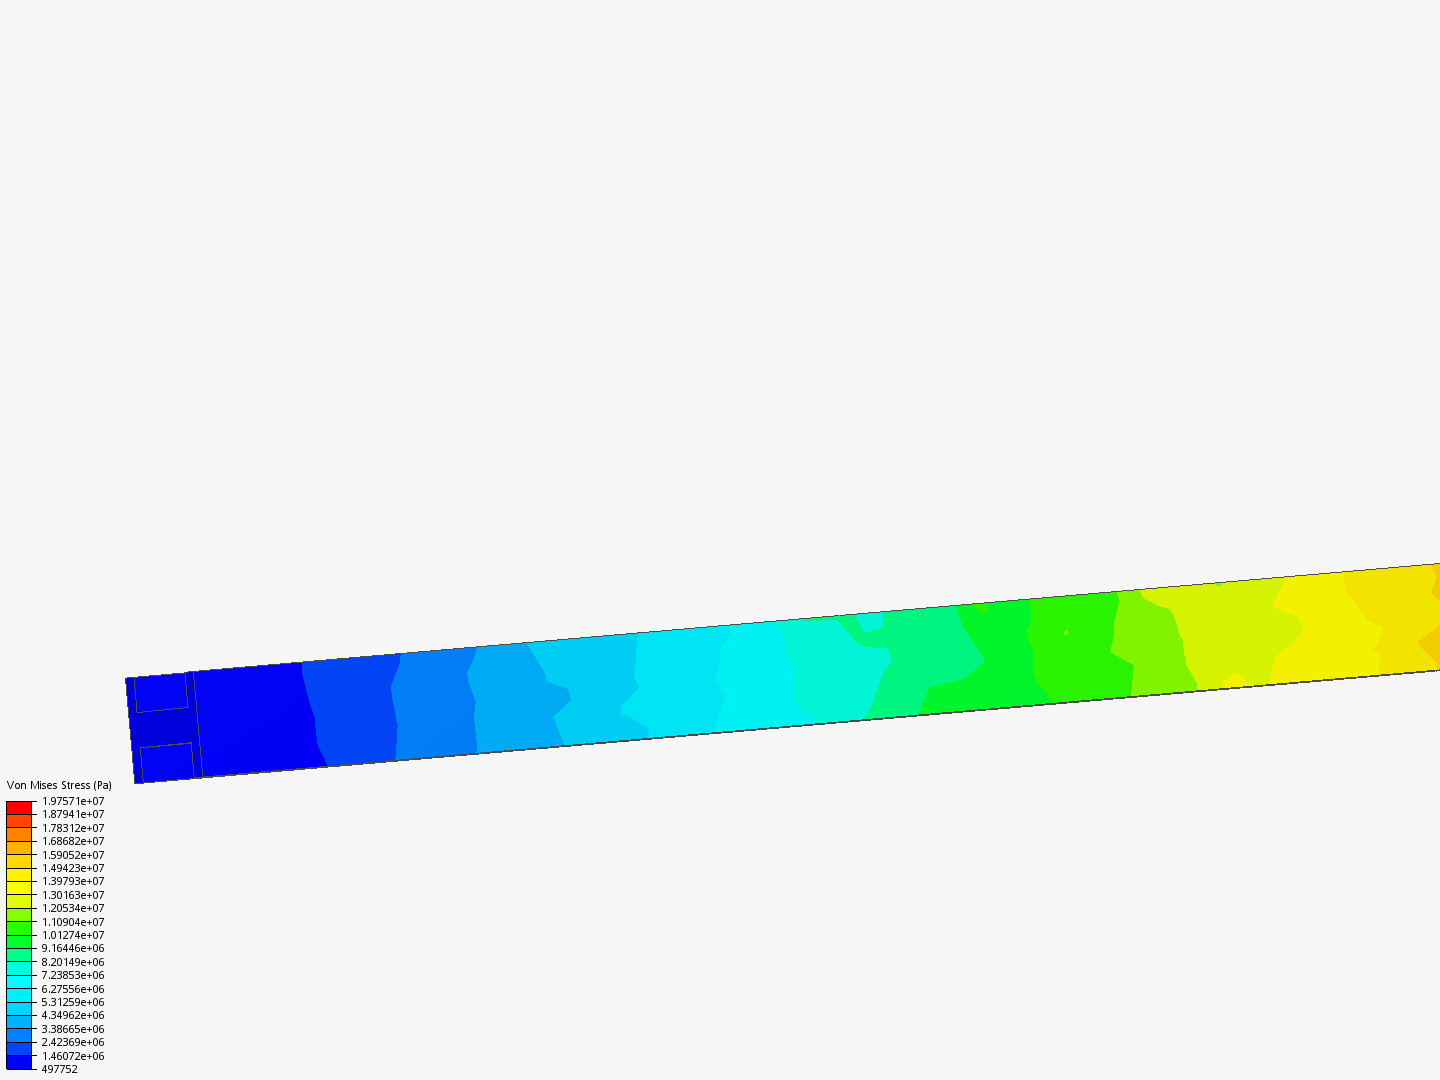 Plate1 : Static analysis of I- beam_(Yu) image